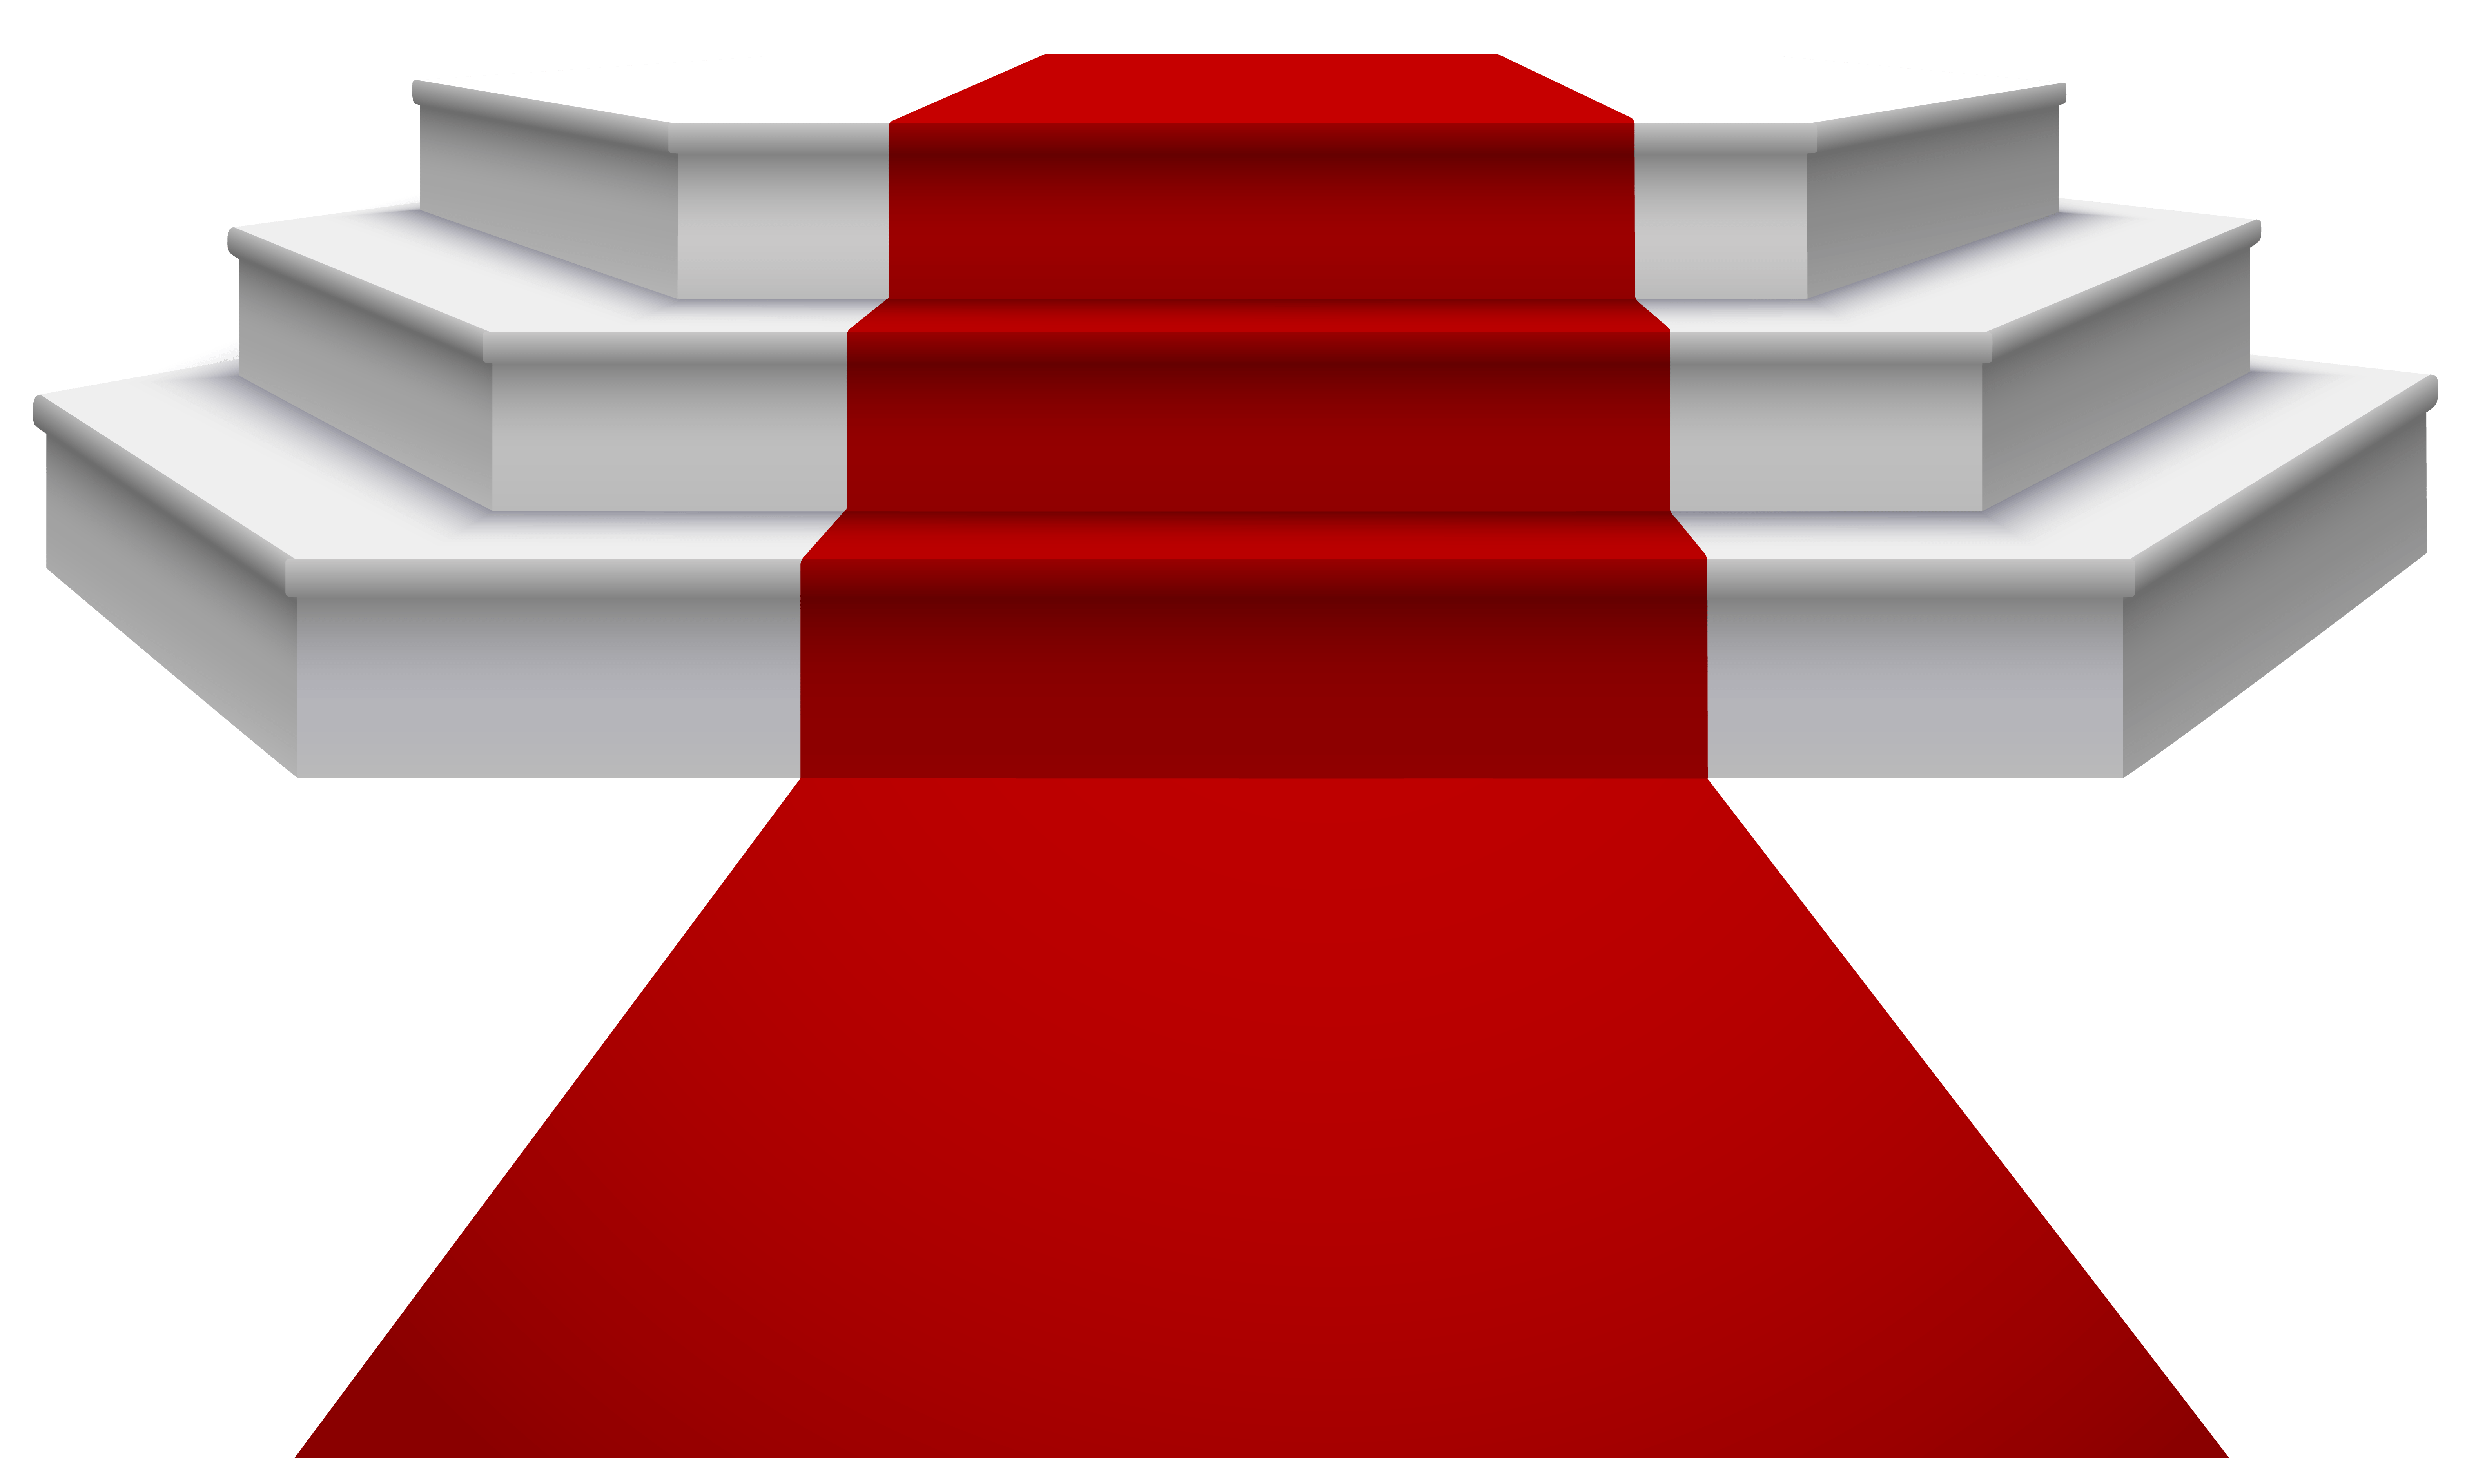 Ред карпет (Red Carpet),. Ступеньки на прозрачном фоне. Красная дорожка со ступеньками. Лестница с красной дорожкой. Красные ступеньки